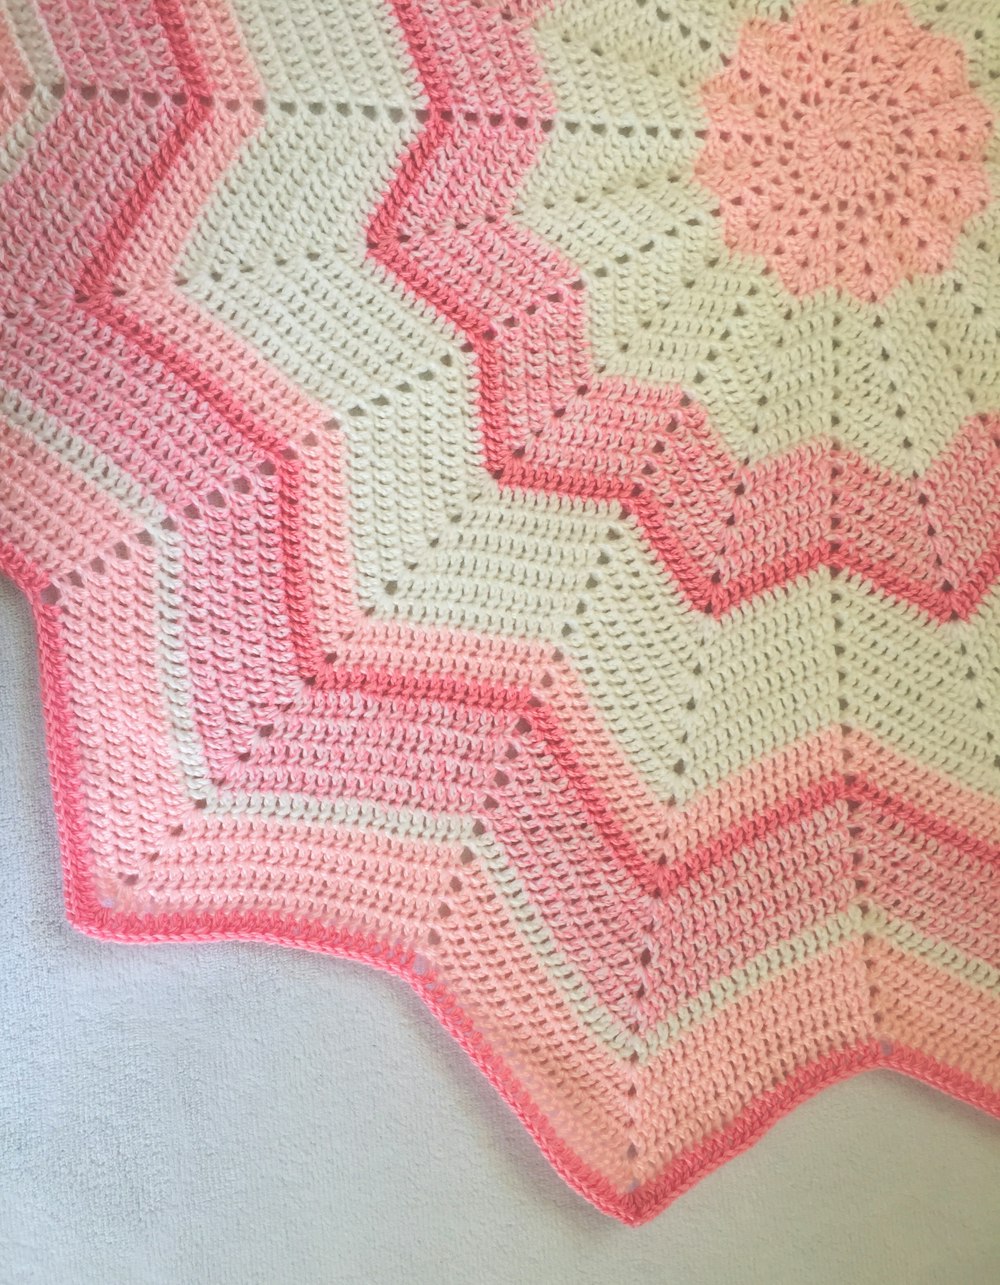 Una manta de ganchillo rosa y blanca sobre una cama